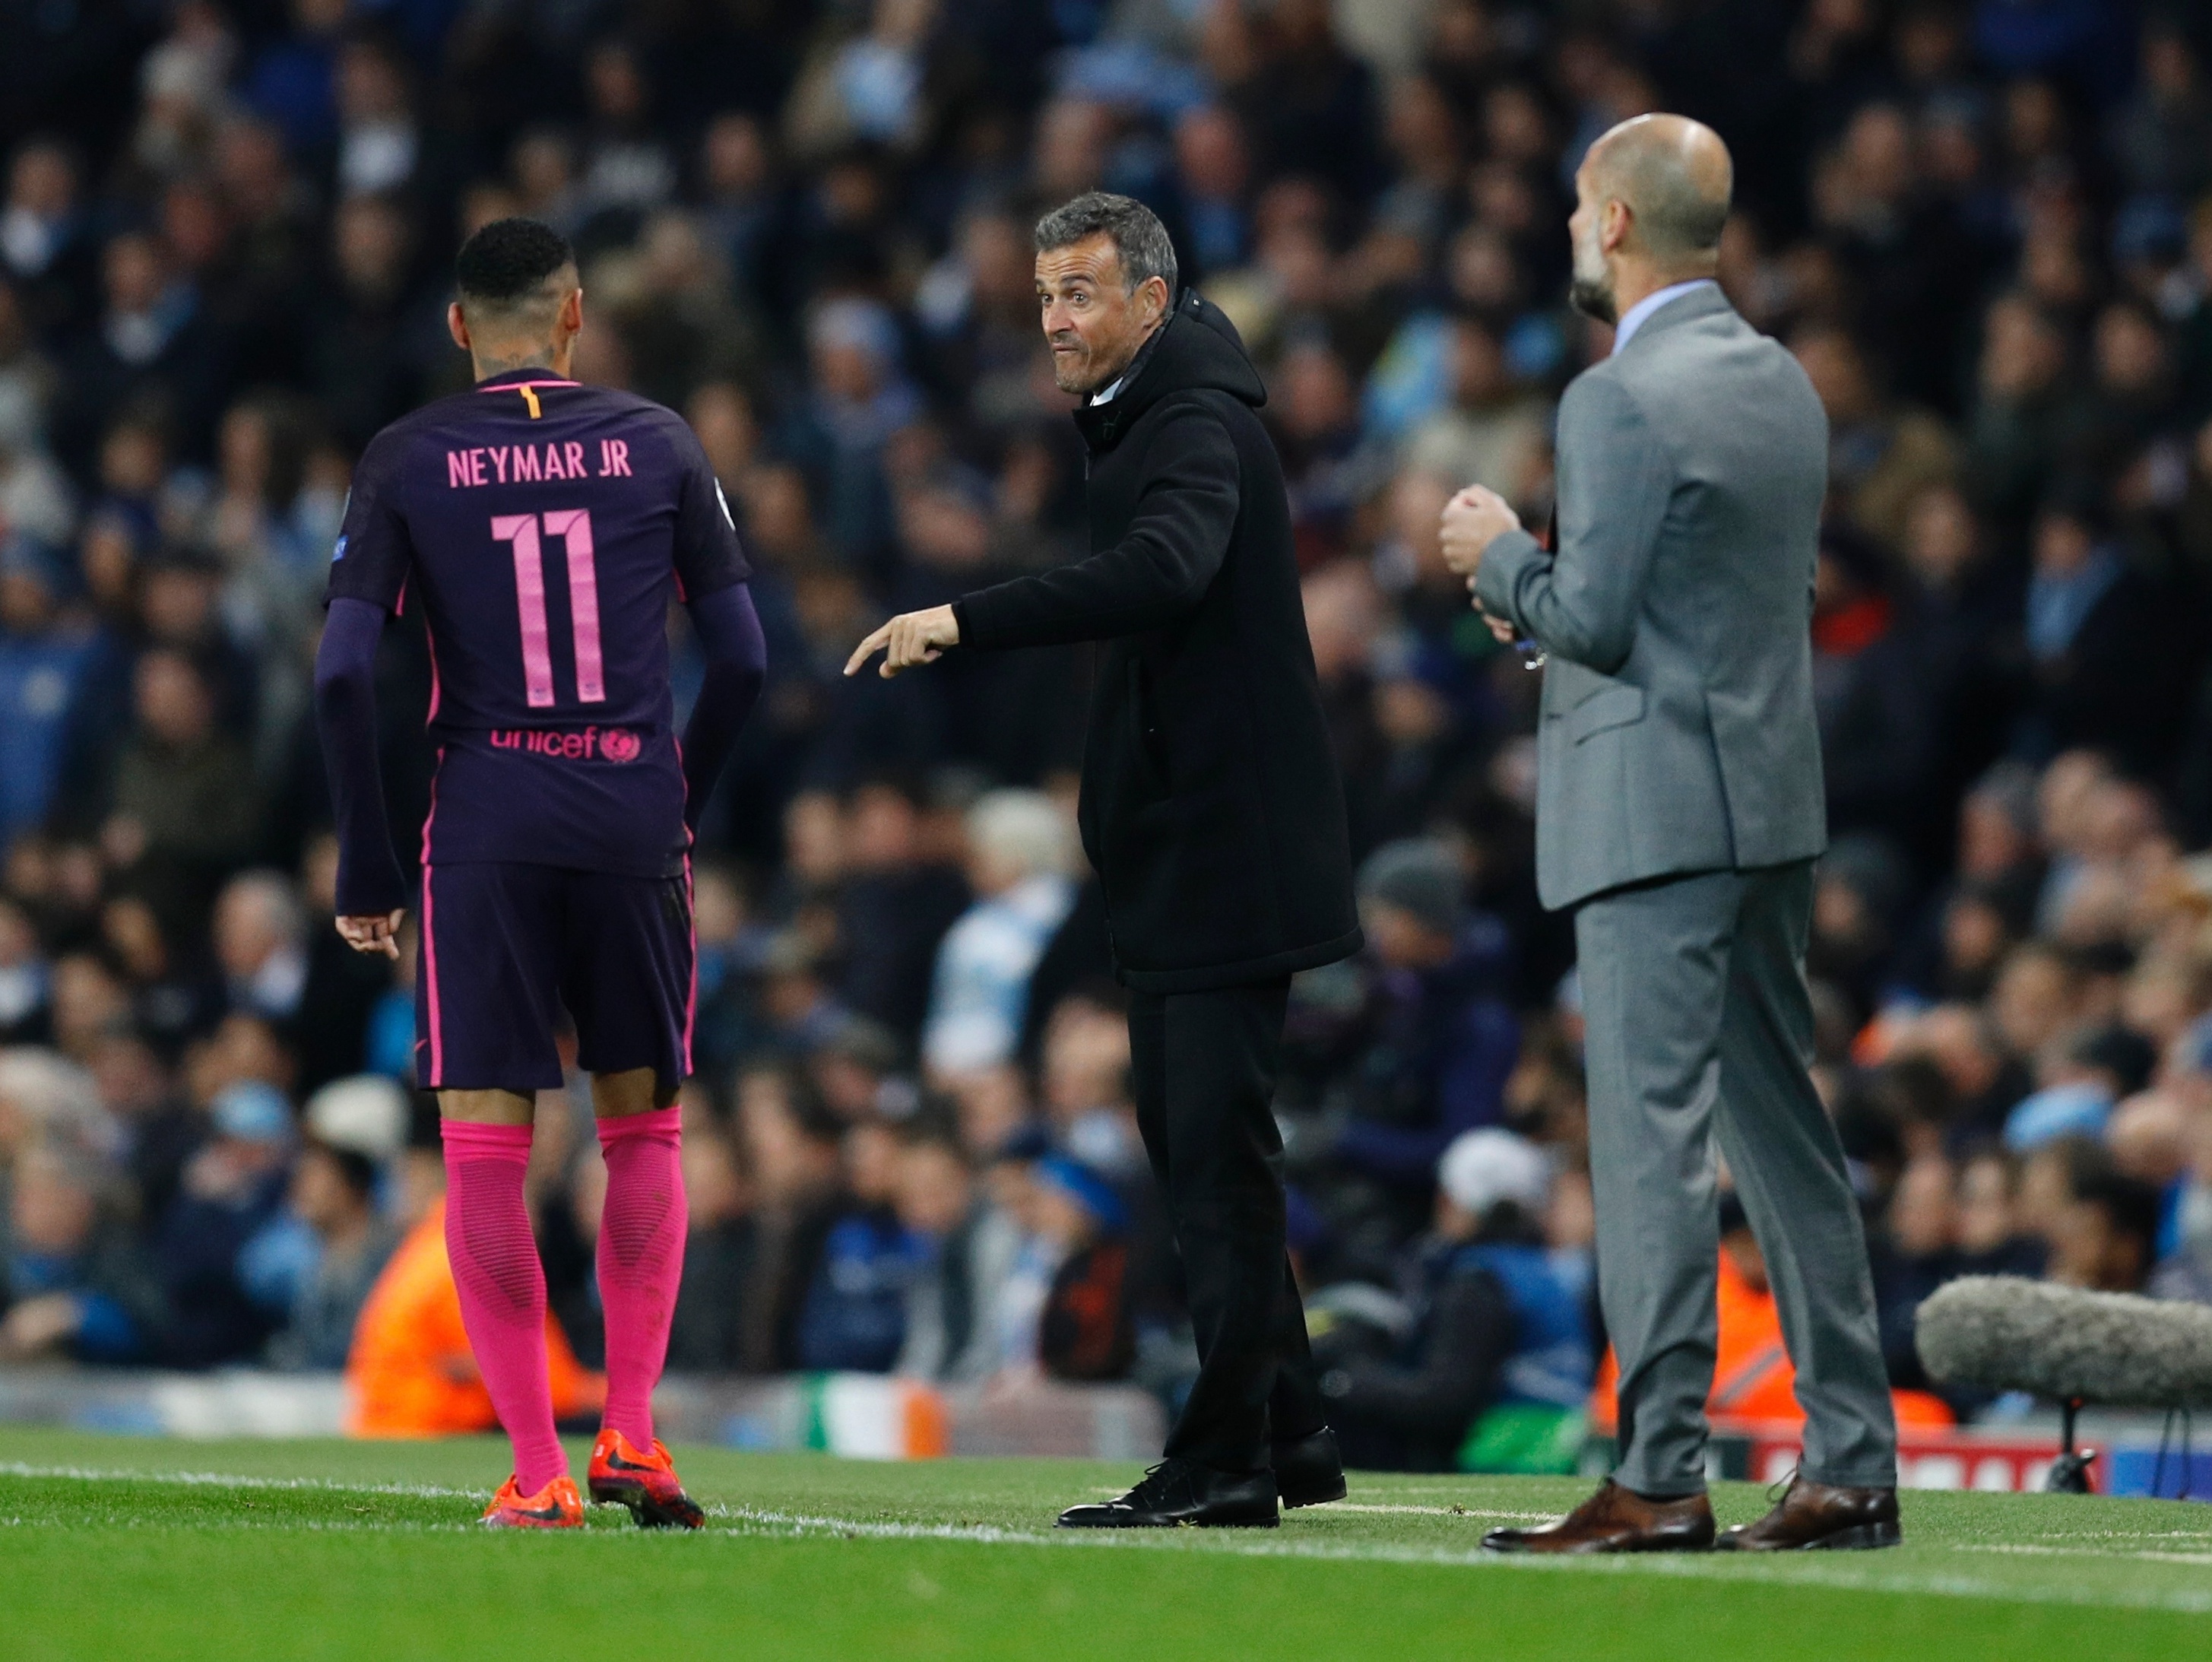 Especulado na seleção, Luis Enrique já irritou e elogiou Neymar no Barça -  Placar - O futebol sem barreiras para você